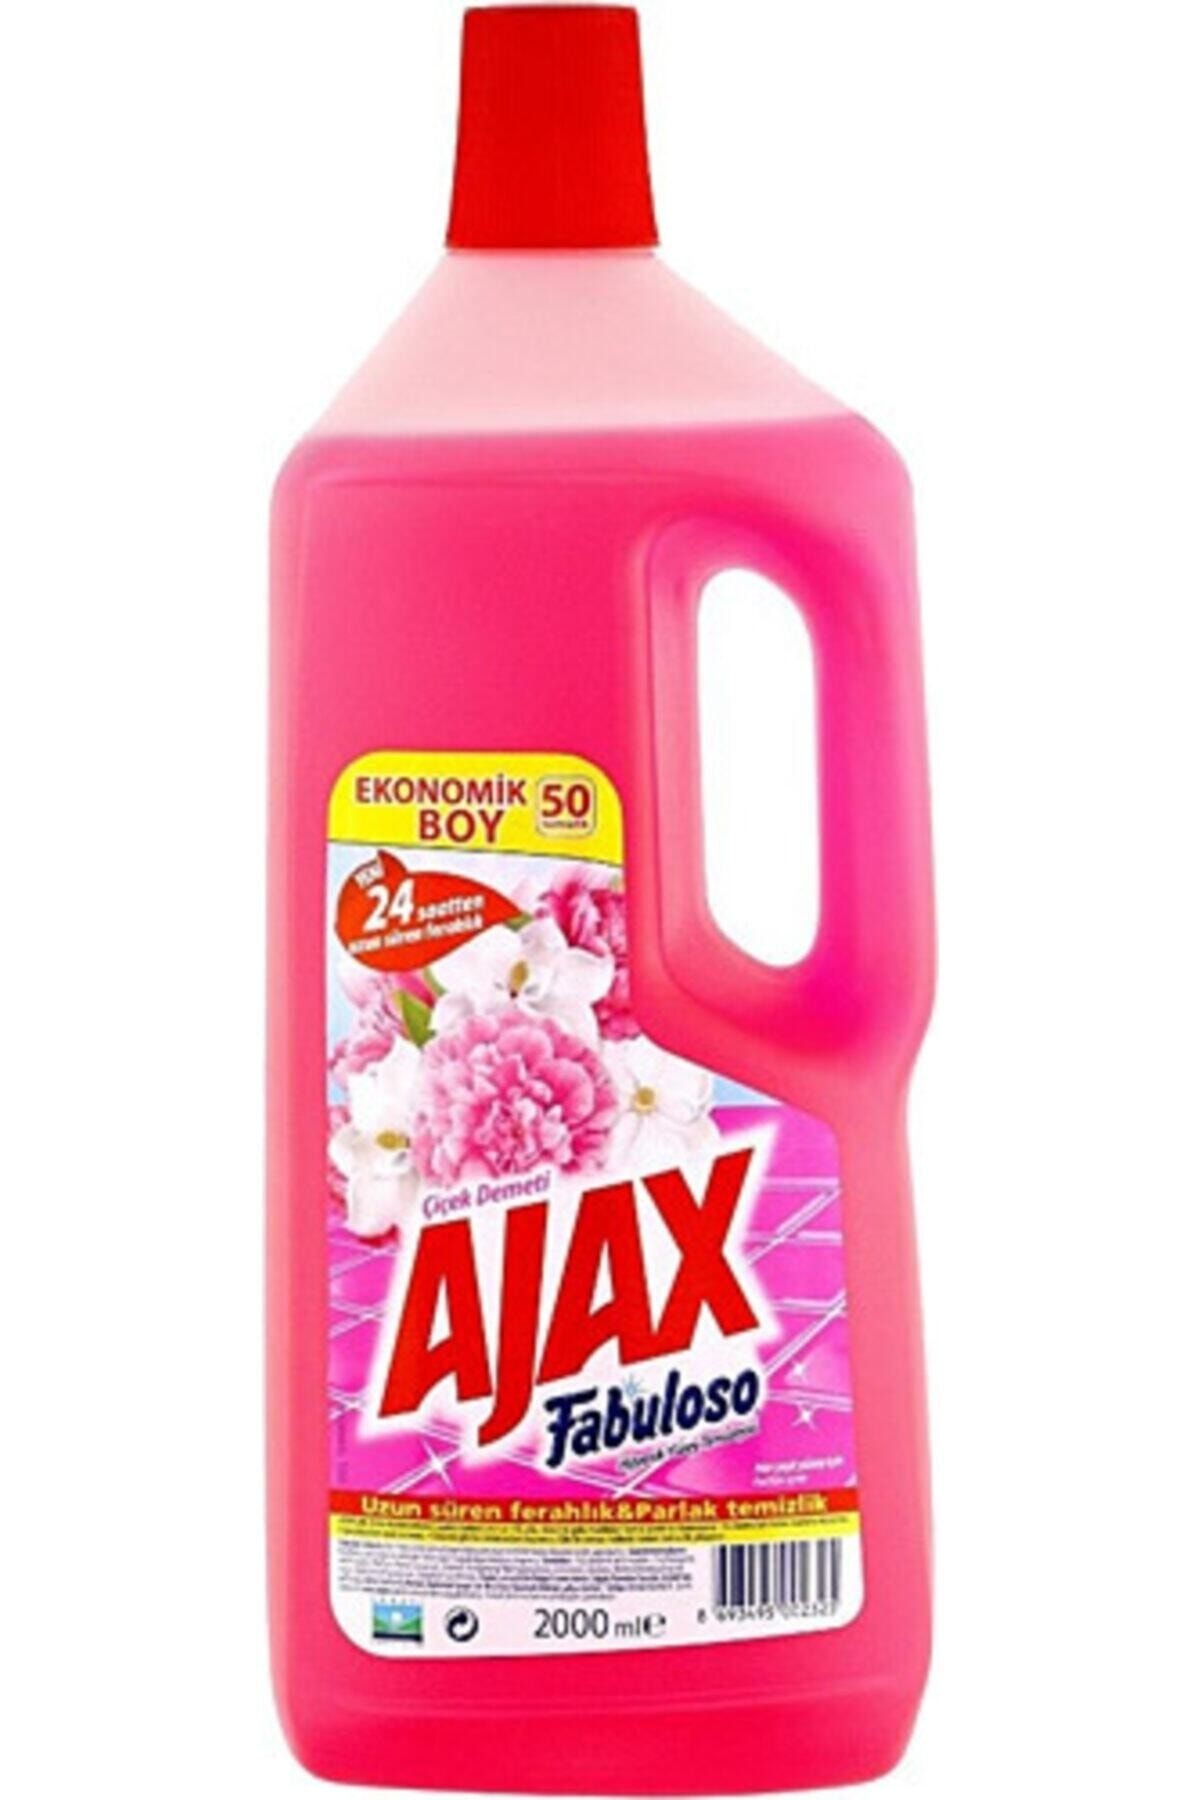 Ajax Fabuloso Yüzey Temizleyici Çiçek Demeti 2000 ml 6 Adet Fabuloso 2 kg Çiçek